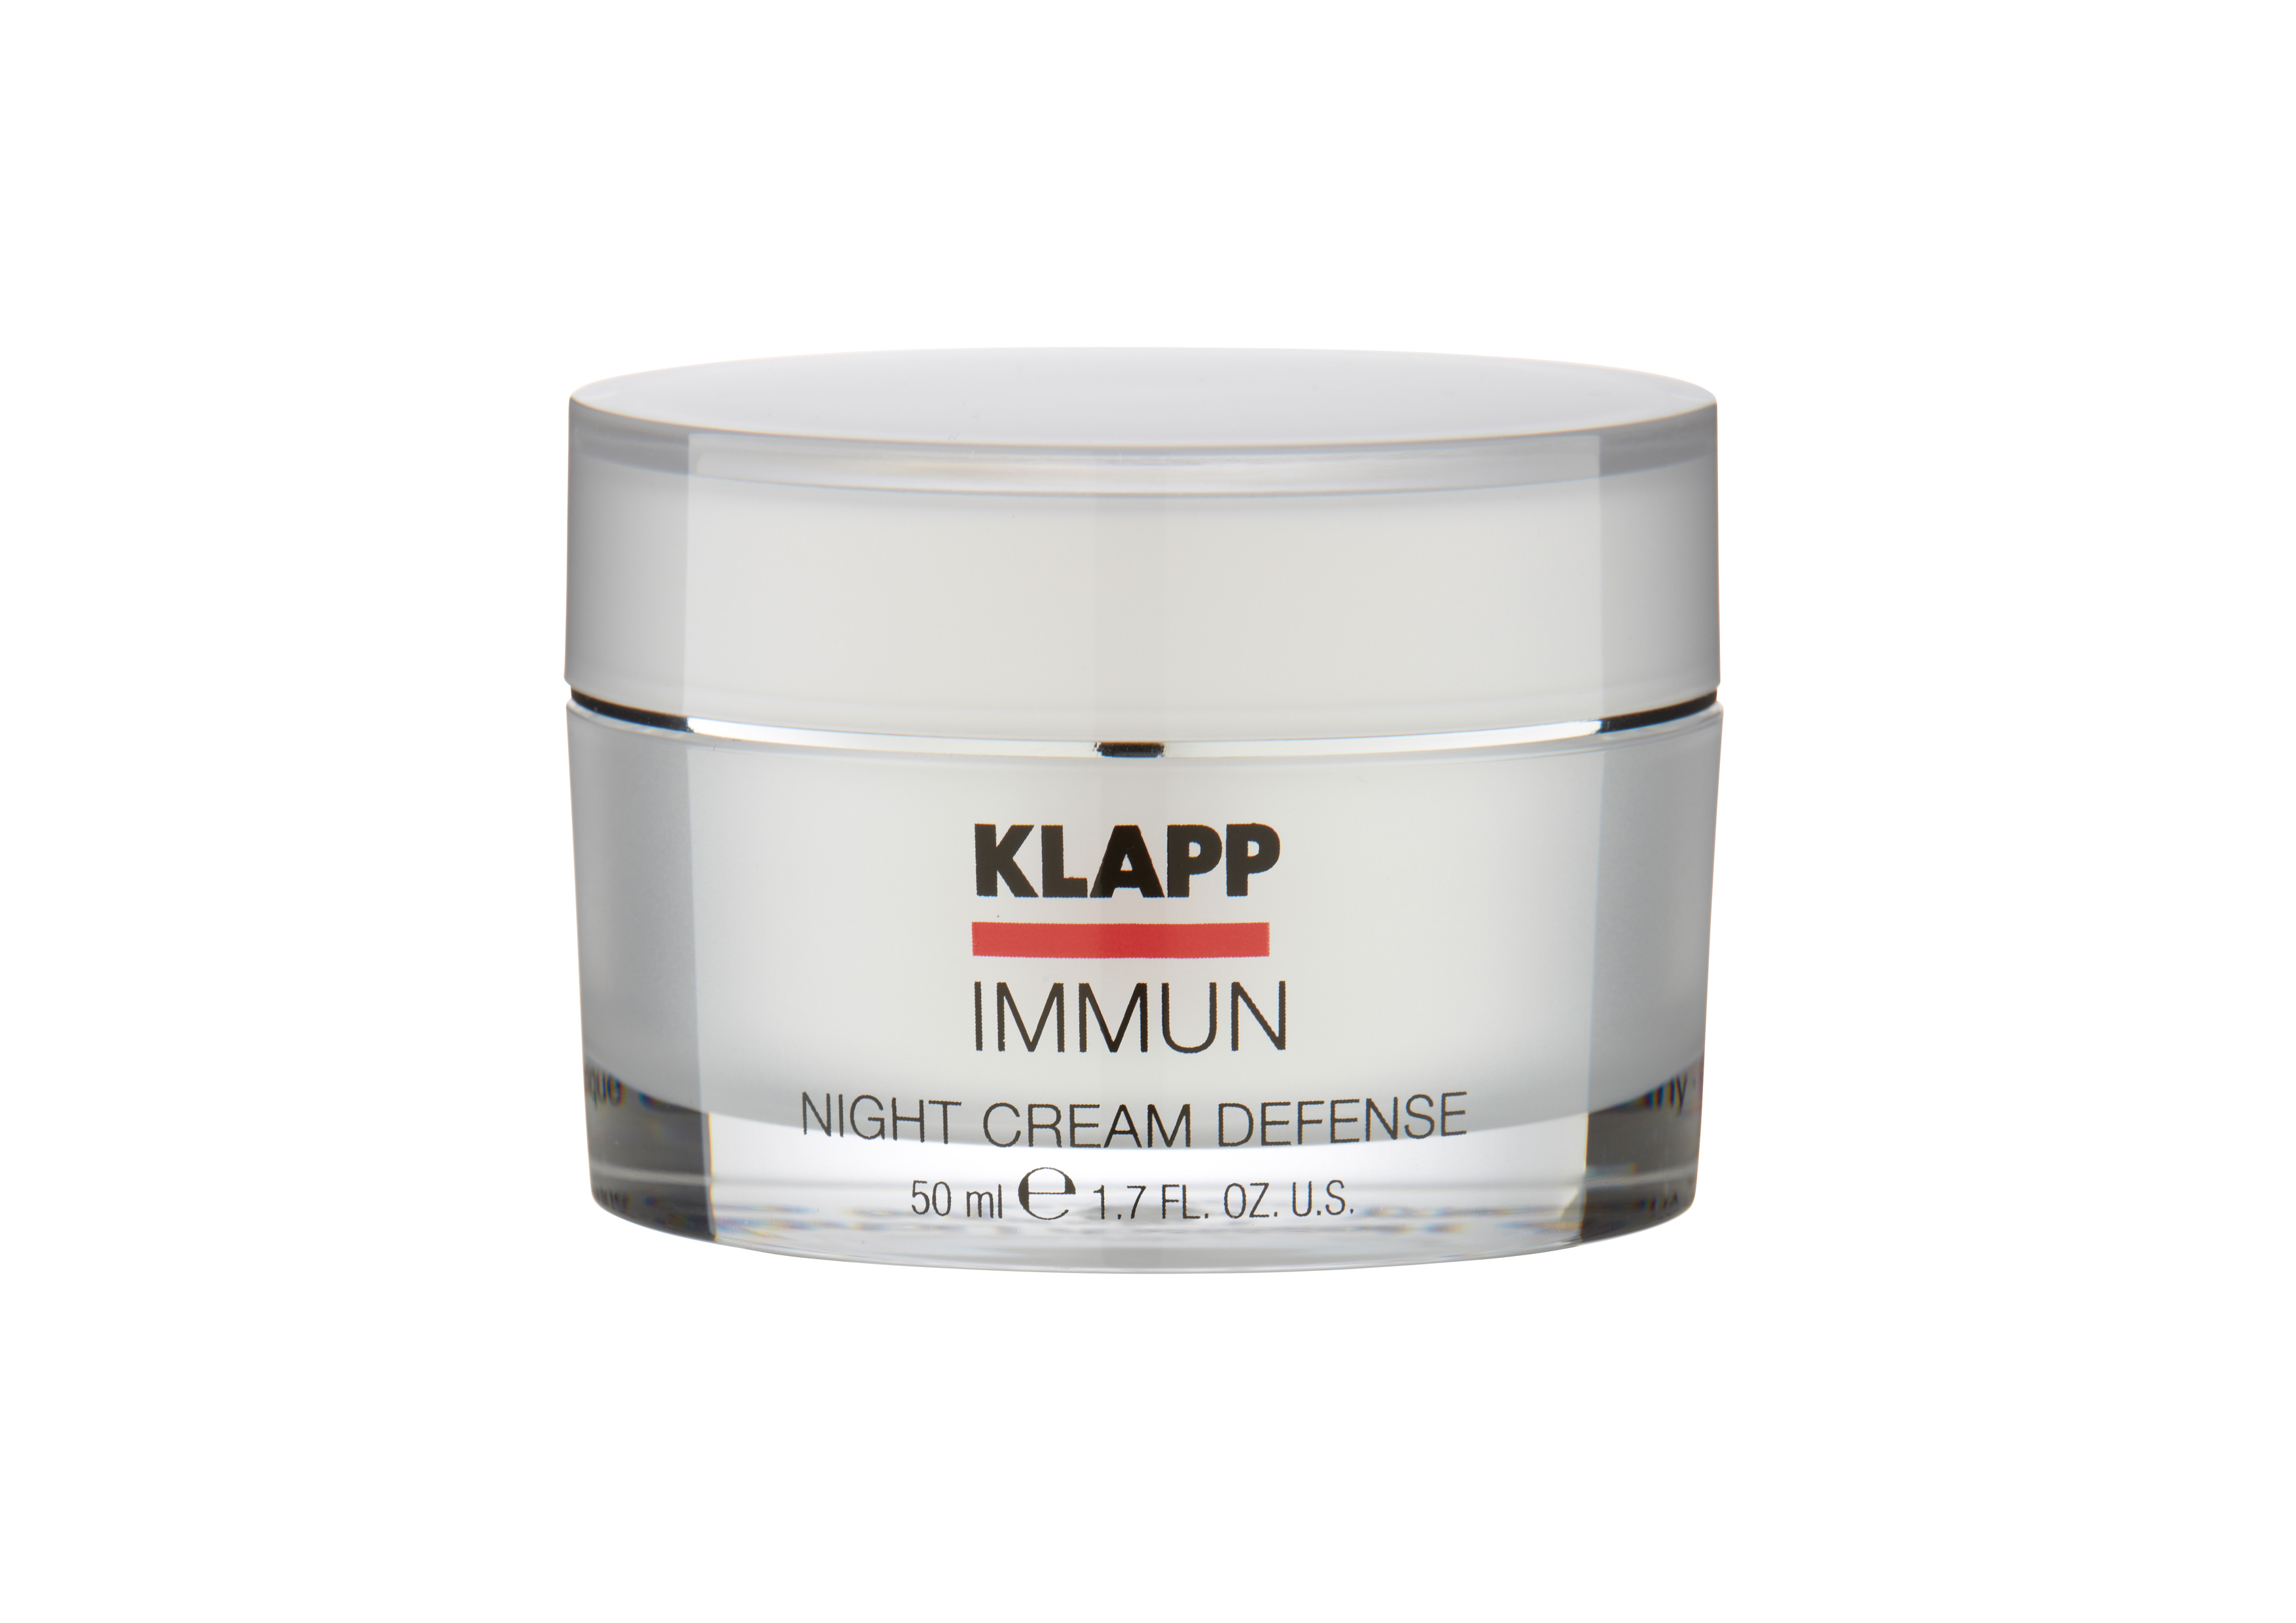 Klapp Immun Night Cream Defense